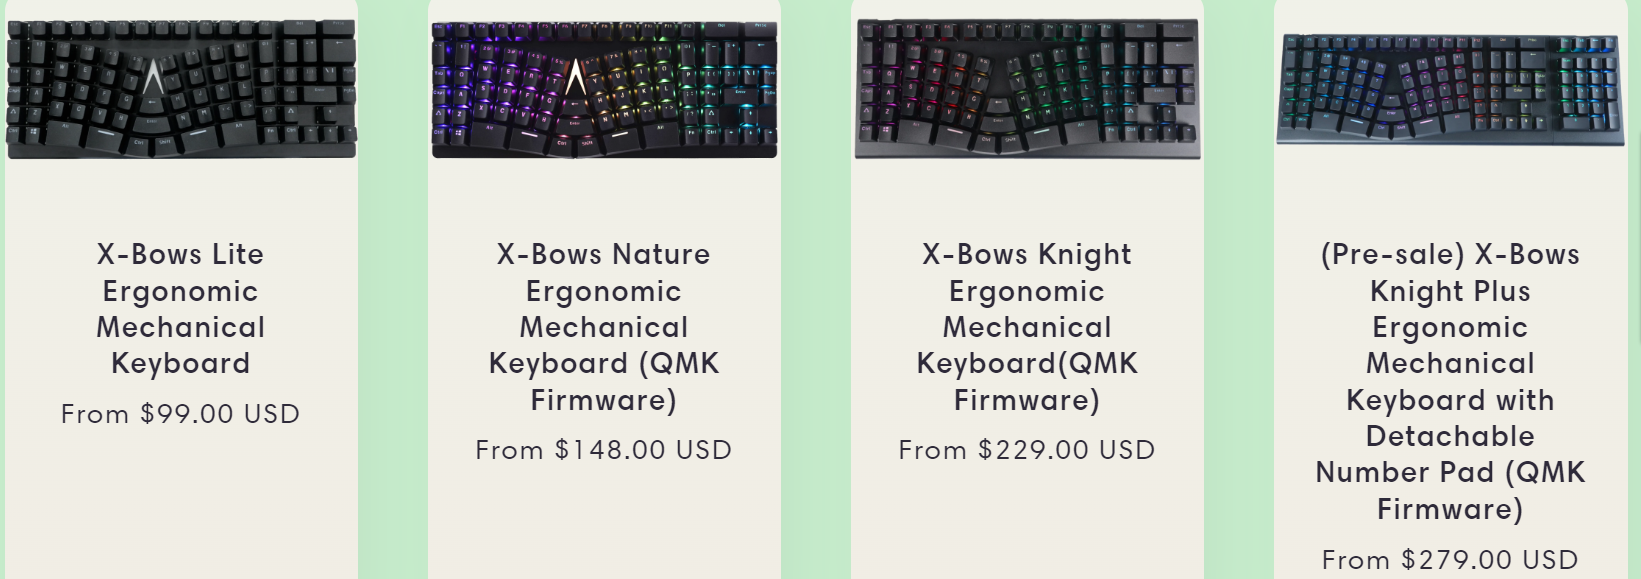 xbows keyboard models 2022-09-24 w9ypf